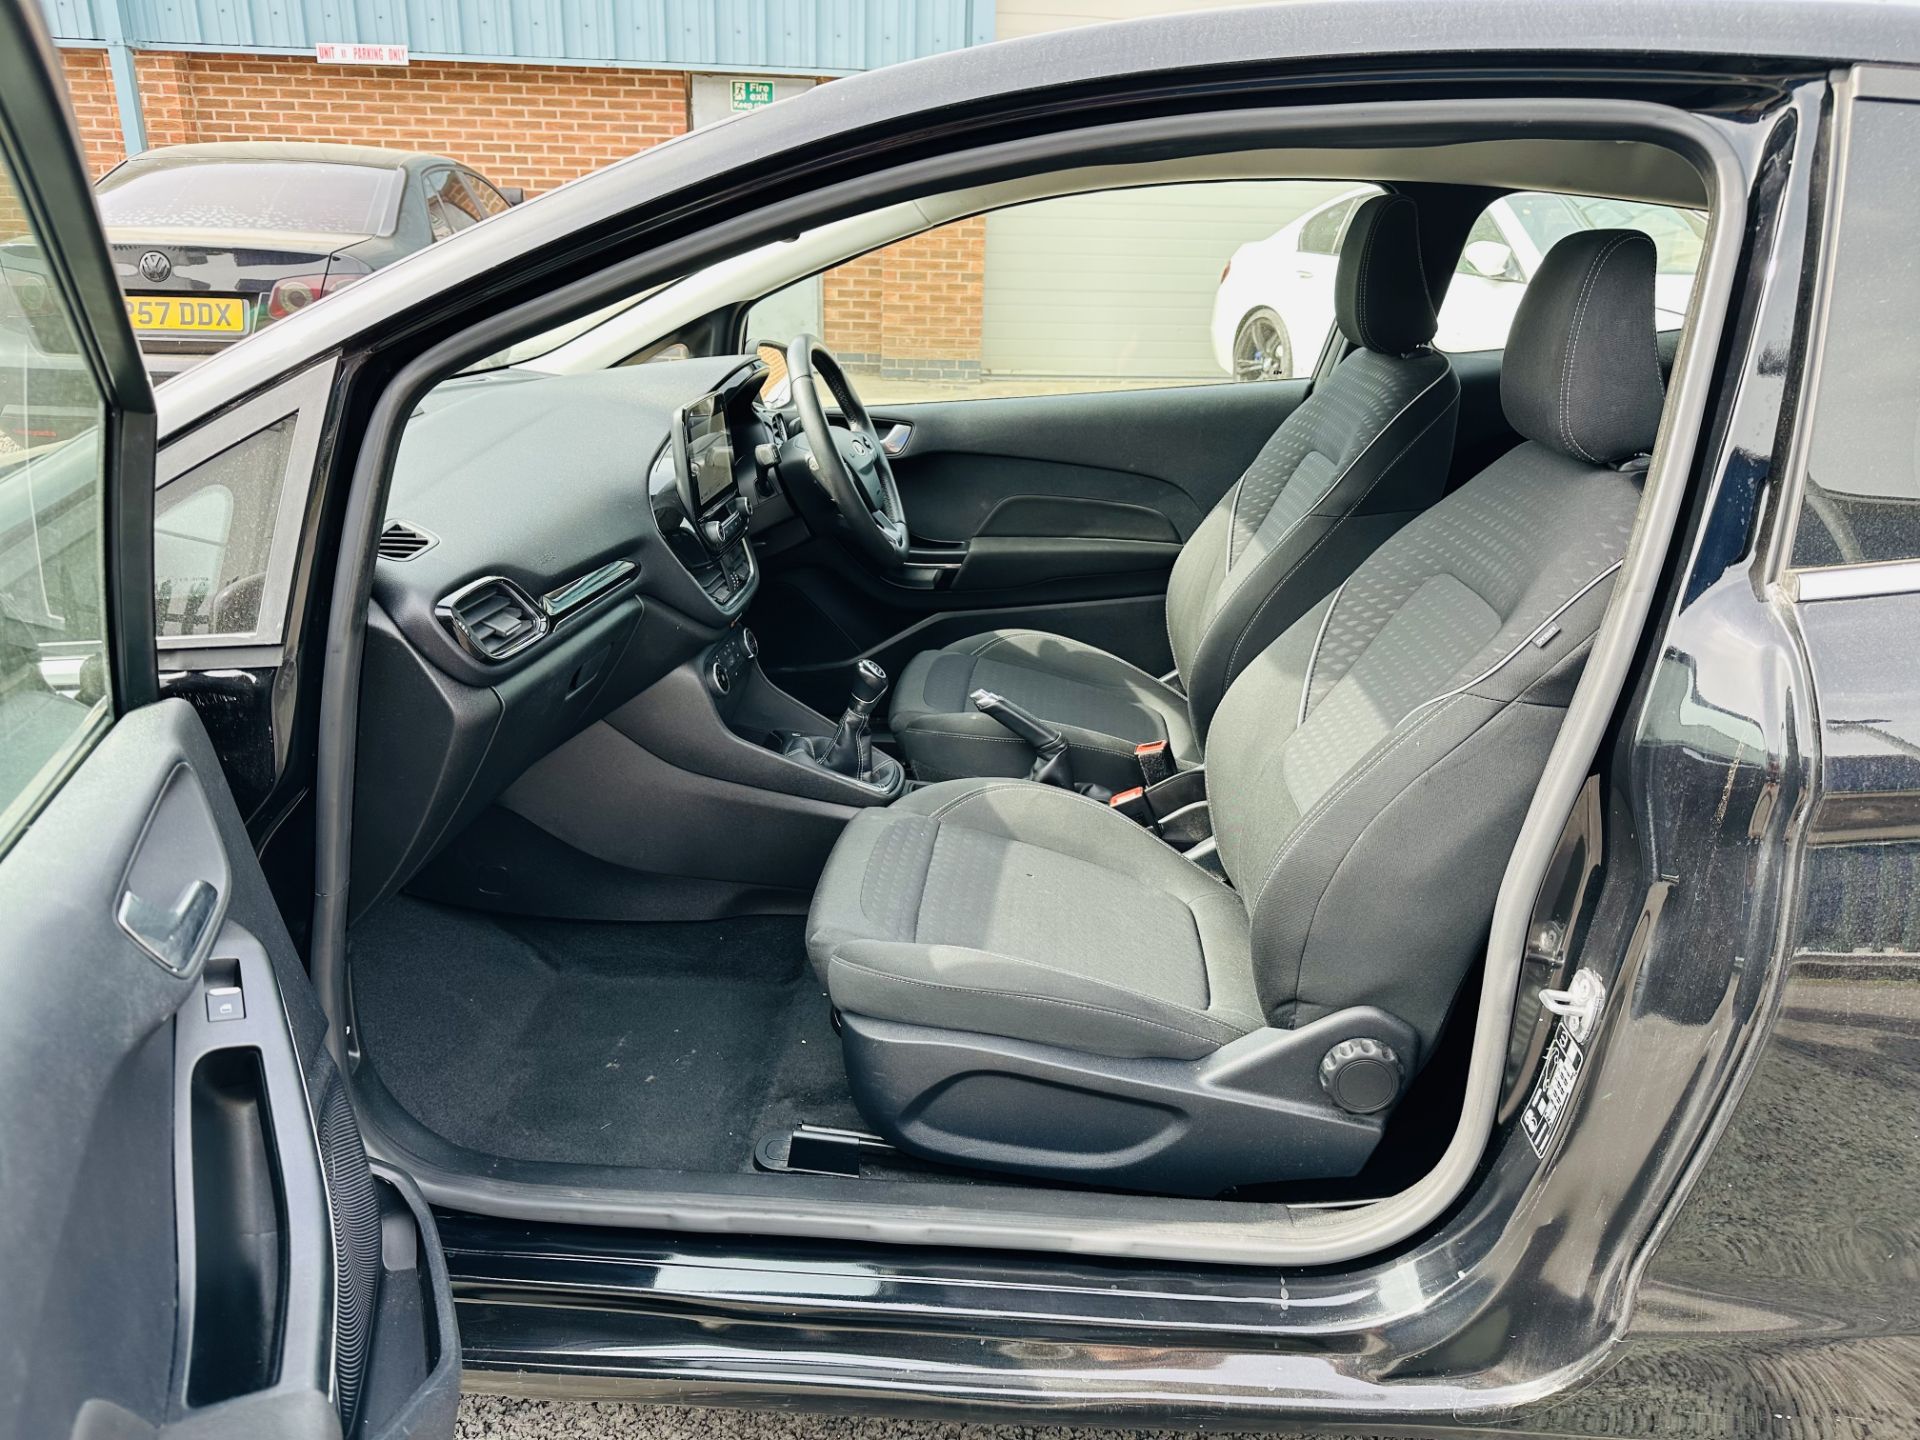 (Reserve met)Ford Fiesta "Zetec" 1.1 TI-VCT (3 Door) 2019 Reg - Only 28K MilesFSH - Black - Air Con - Image 6 of 21